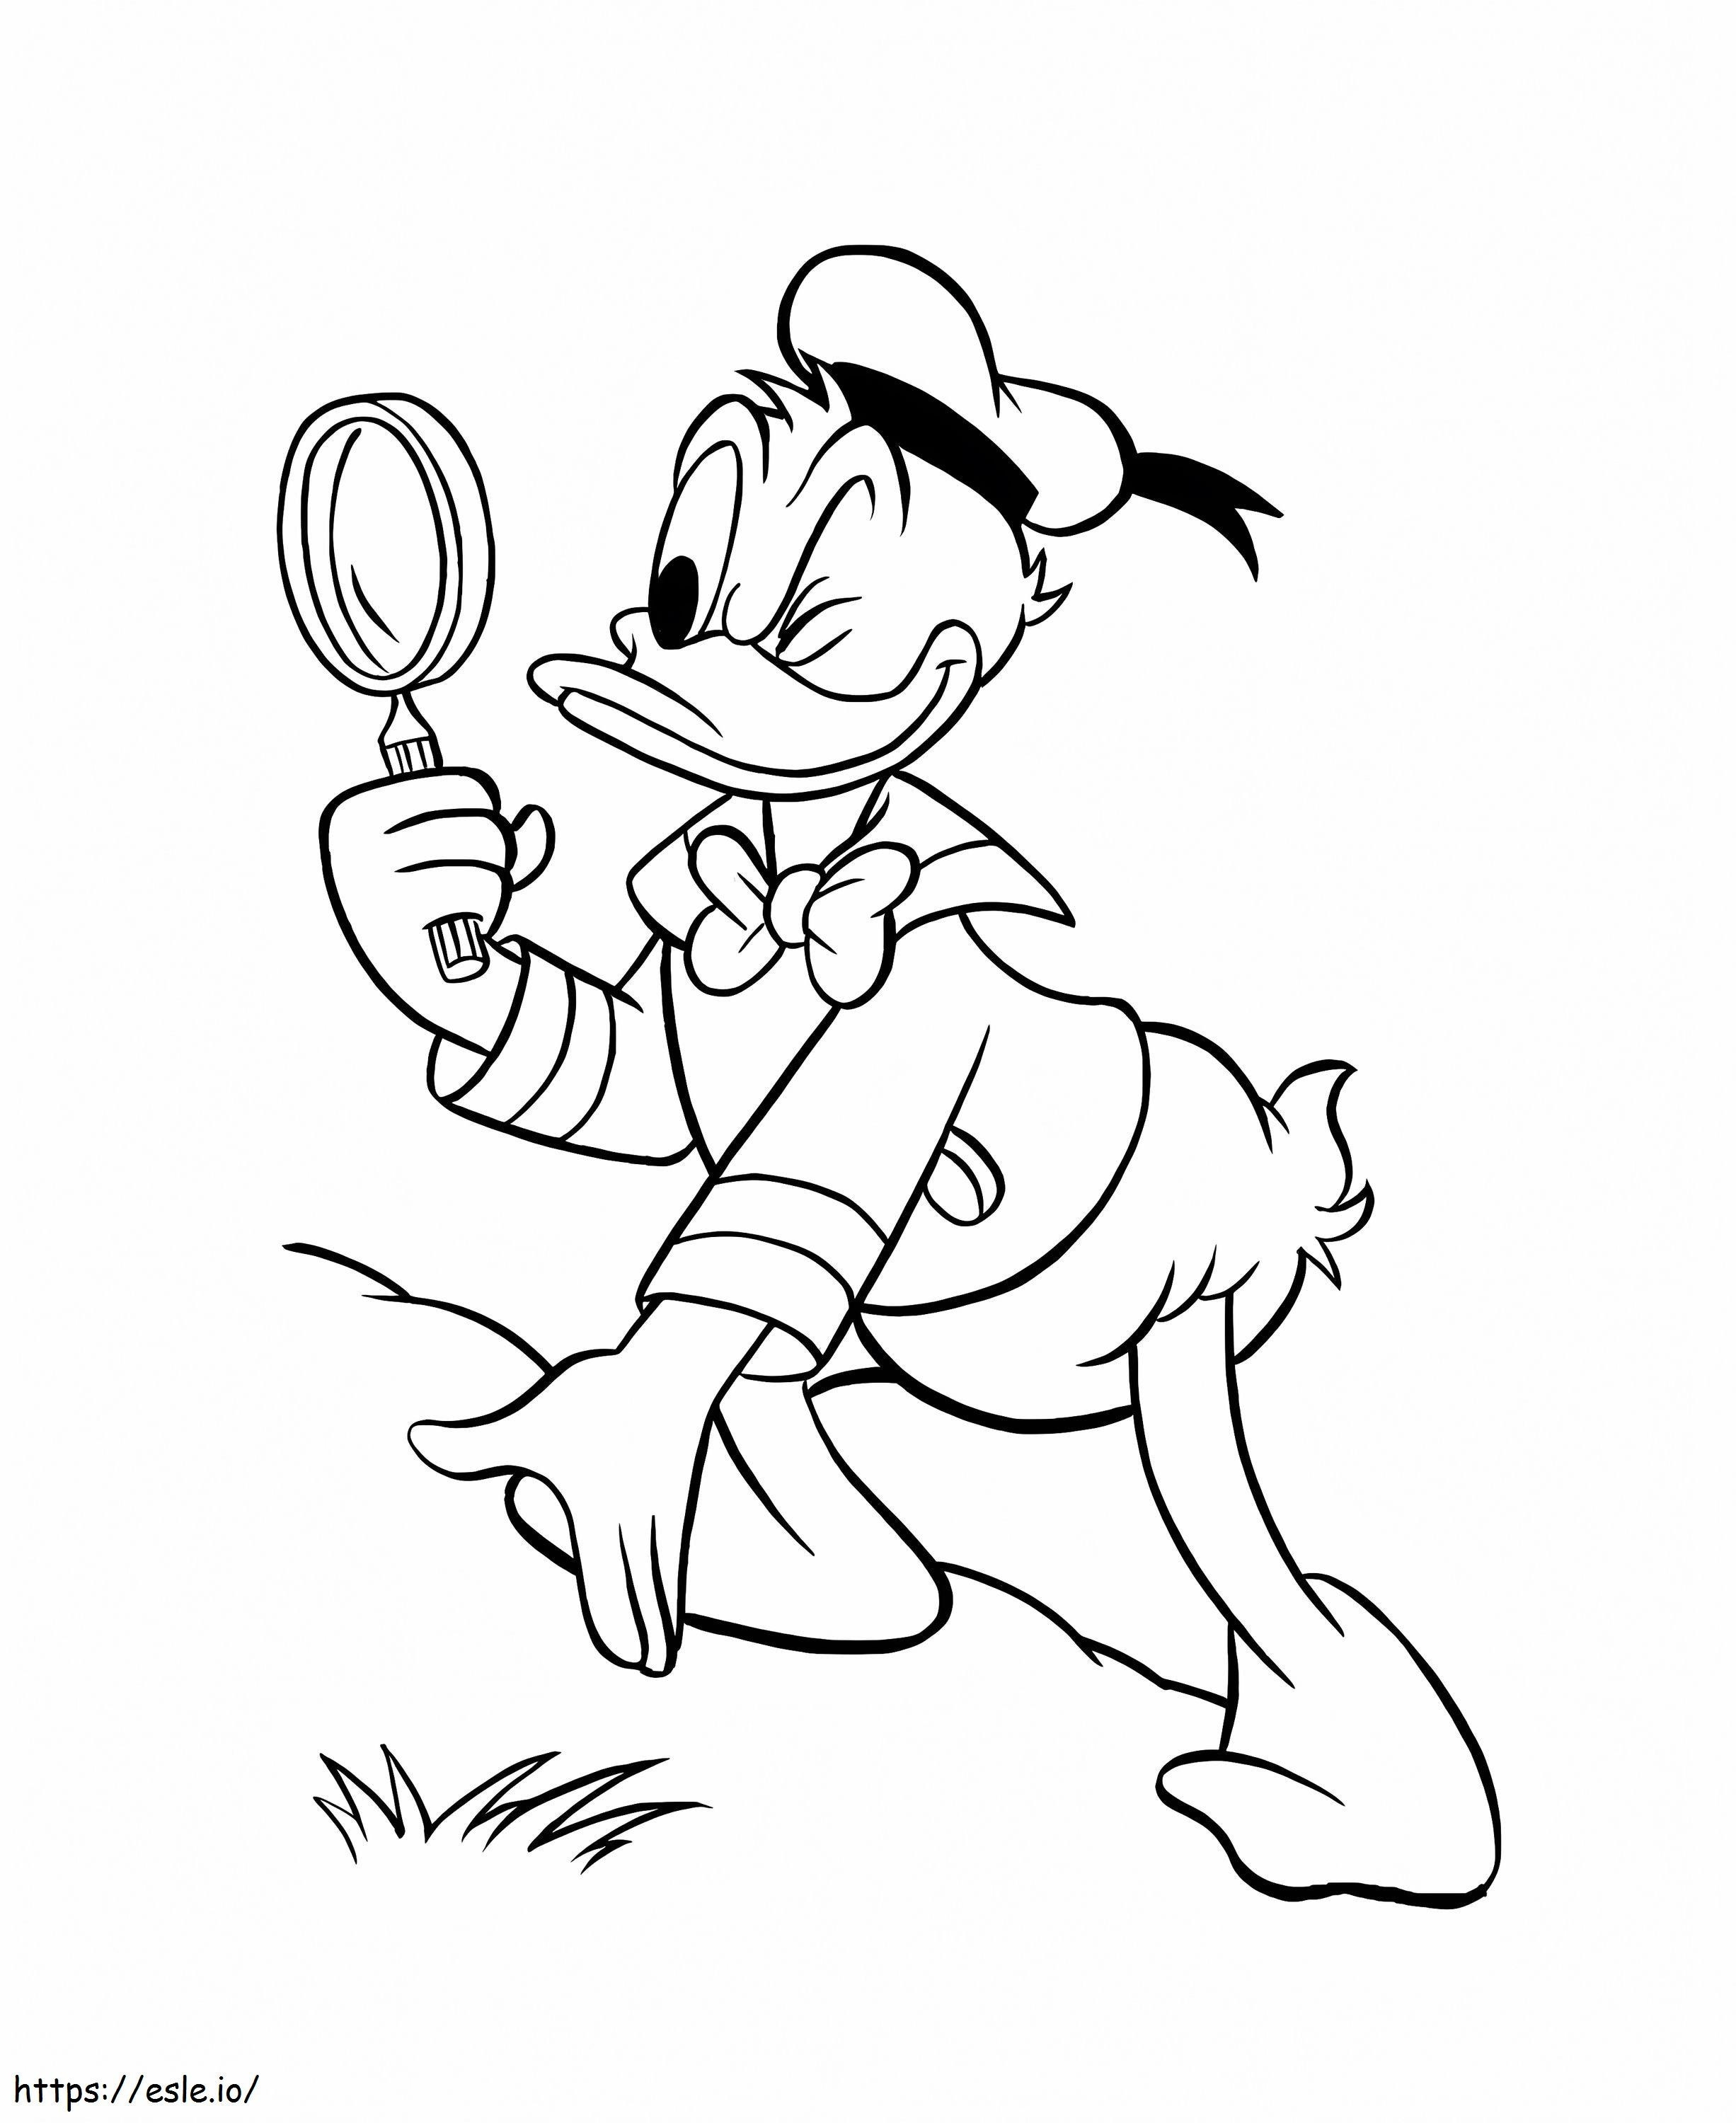 Donald Duck schaut durch eine Lupe ausmalbilder